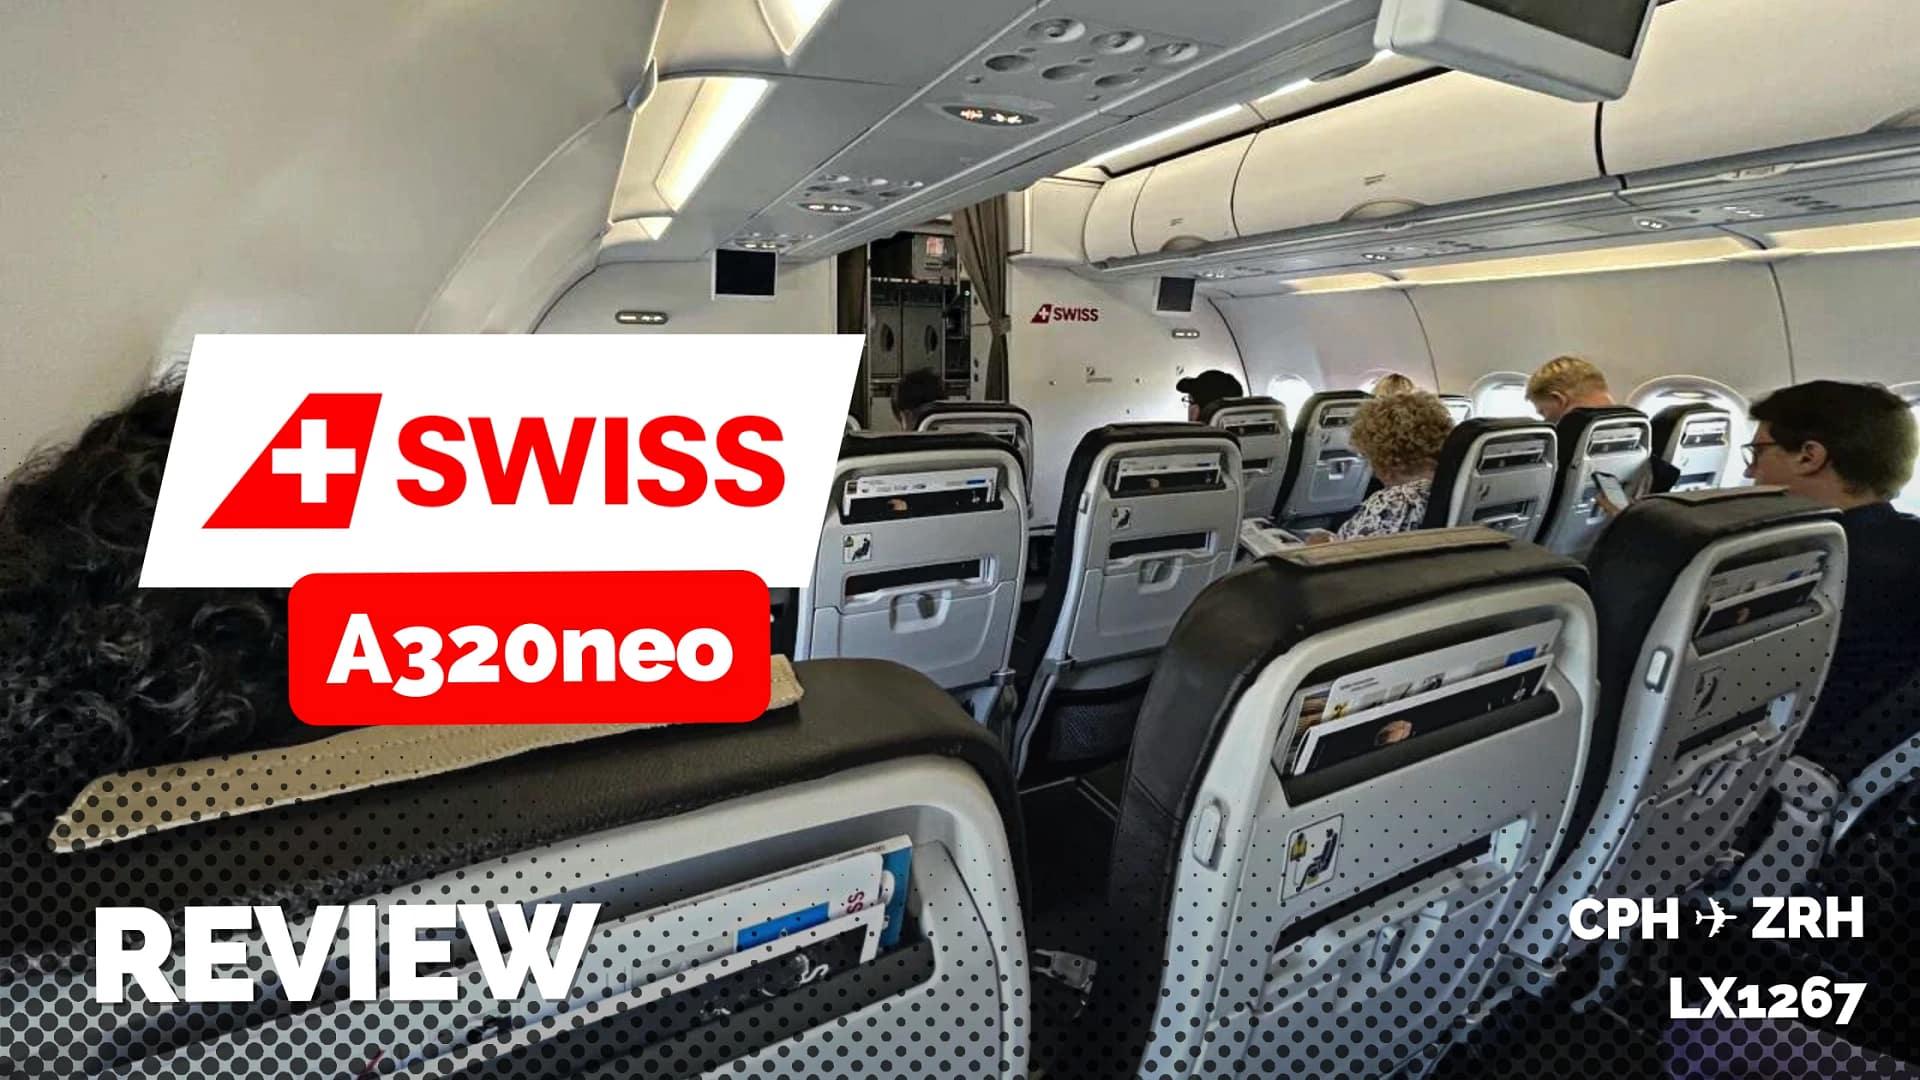 Swiss A320neo Business Class Copenhagen to Zurich